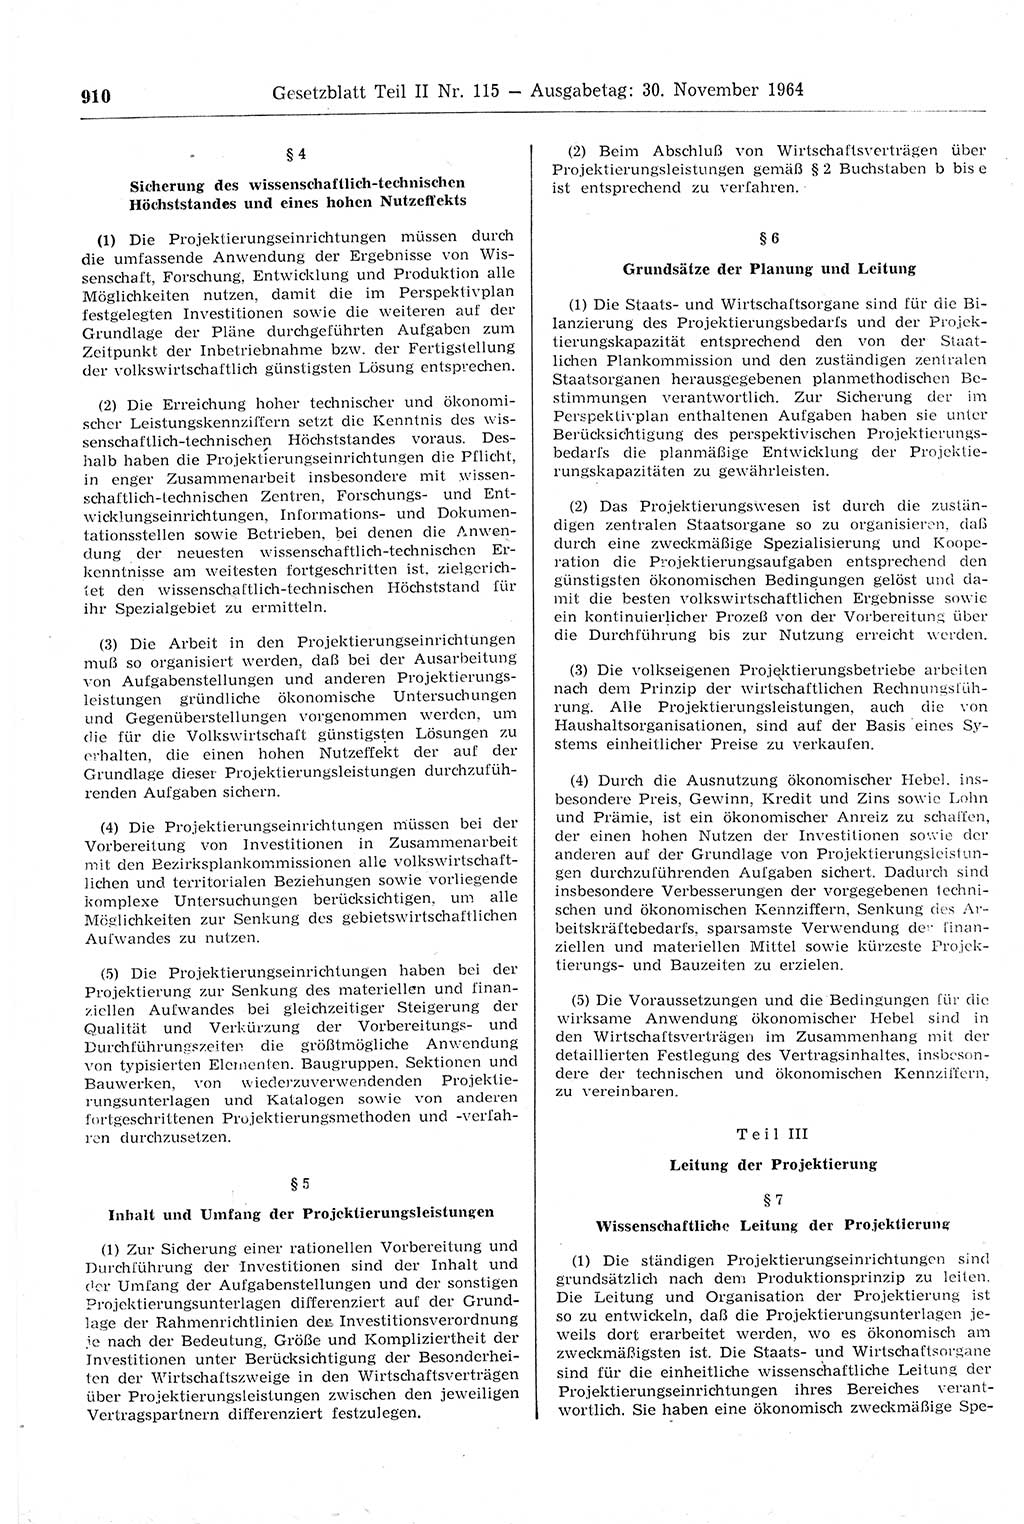 Gesetzblatt (GBl.) der Deutschen Demokratischen Republik (DDR) Teil ⅠⅠ 1964, Seite 910 (GBl. DDR ⅠⅠ 1964, S. 910)